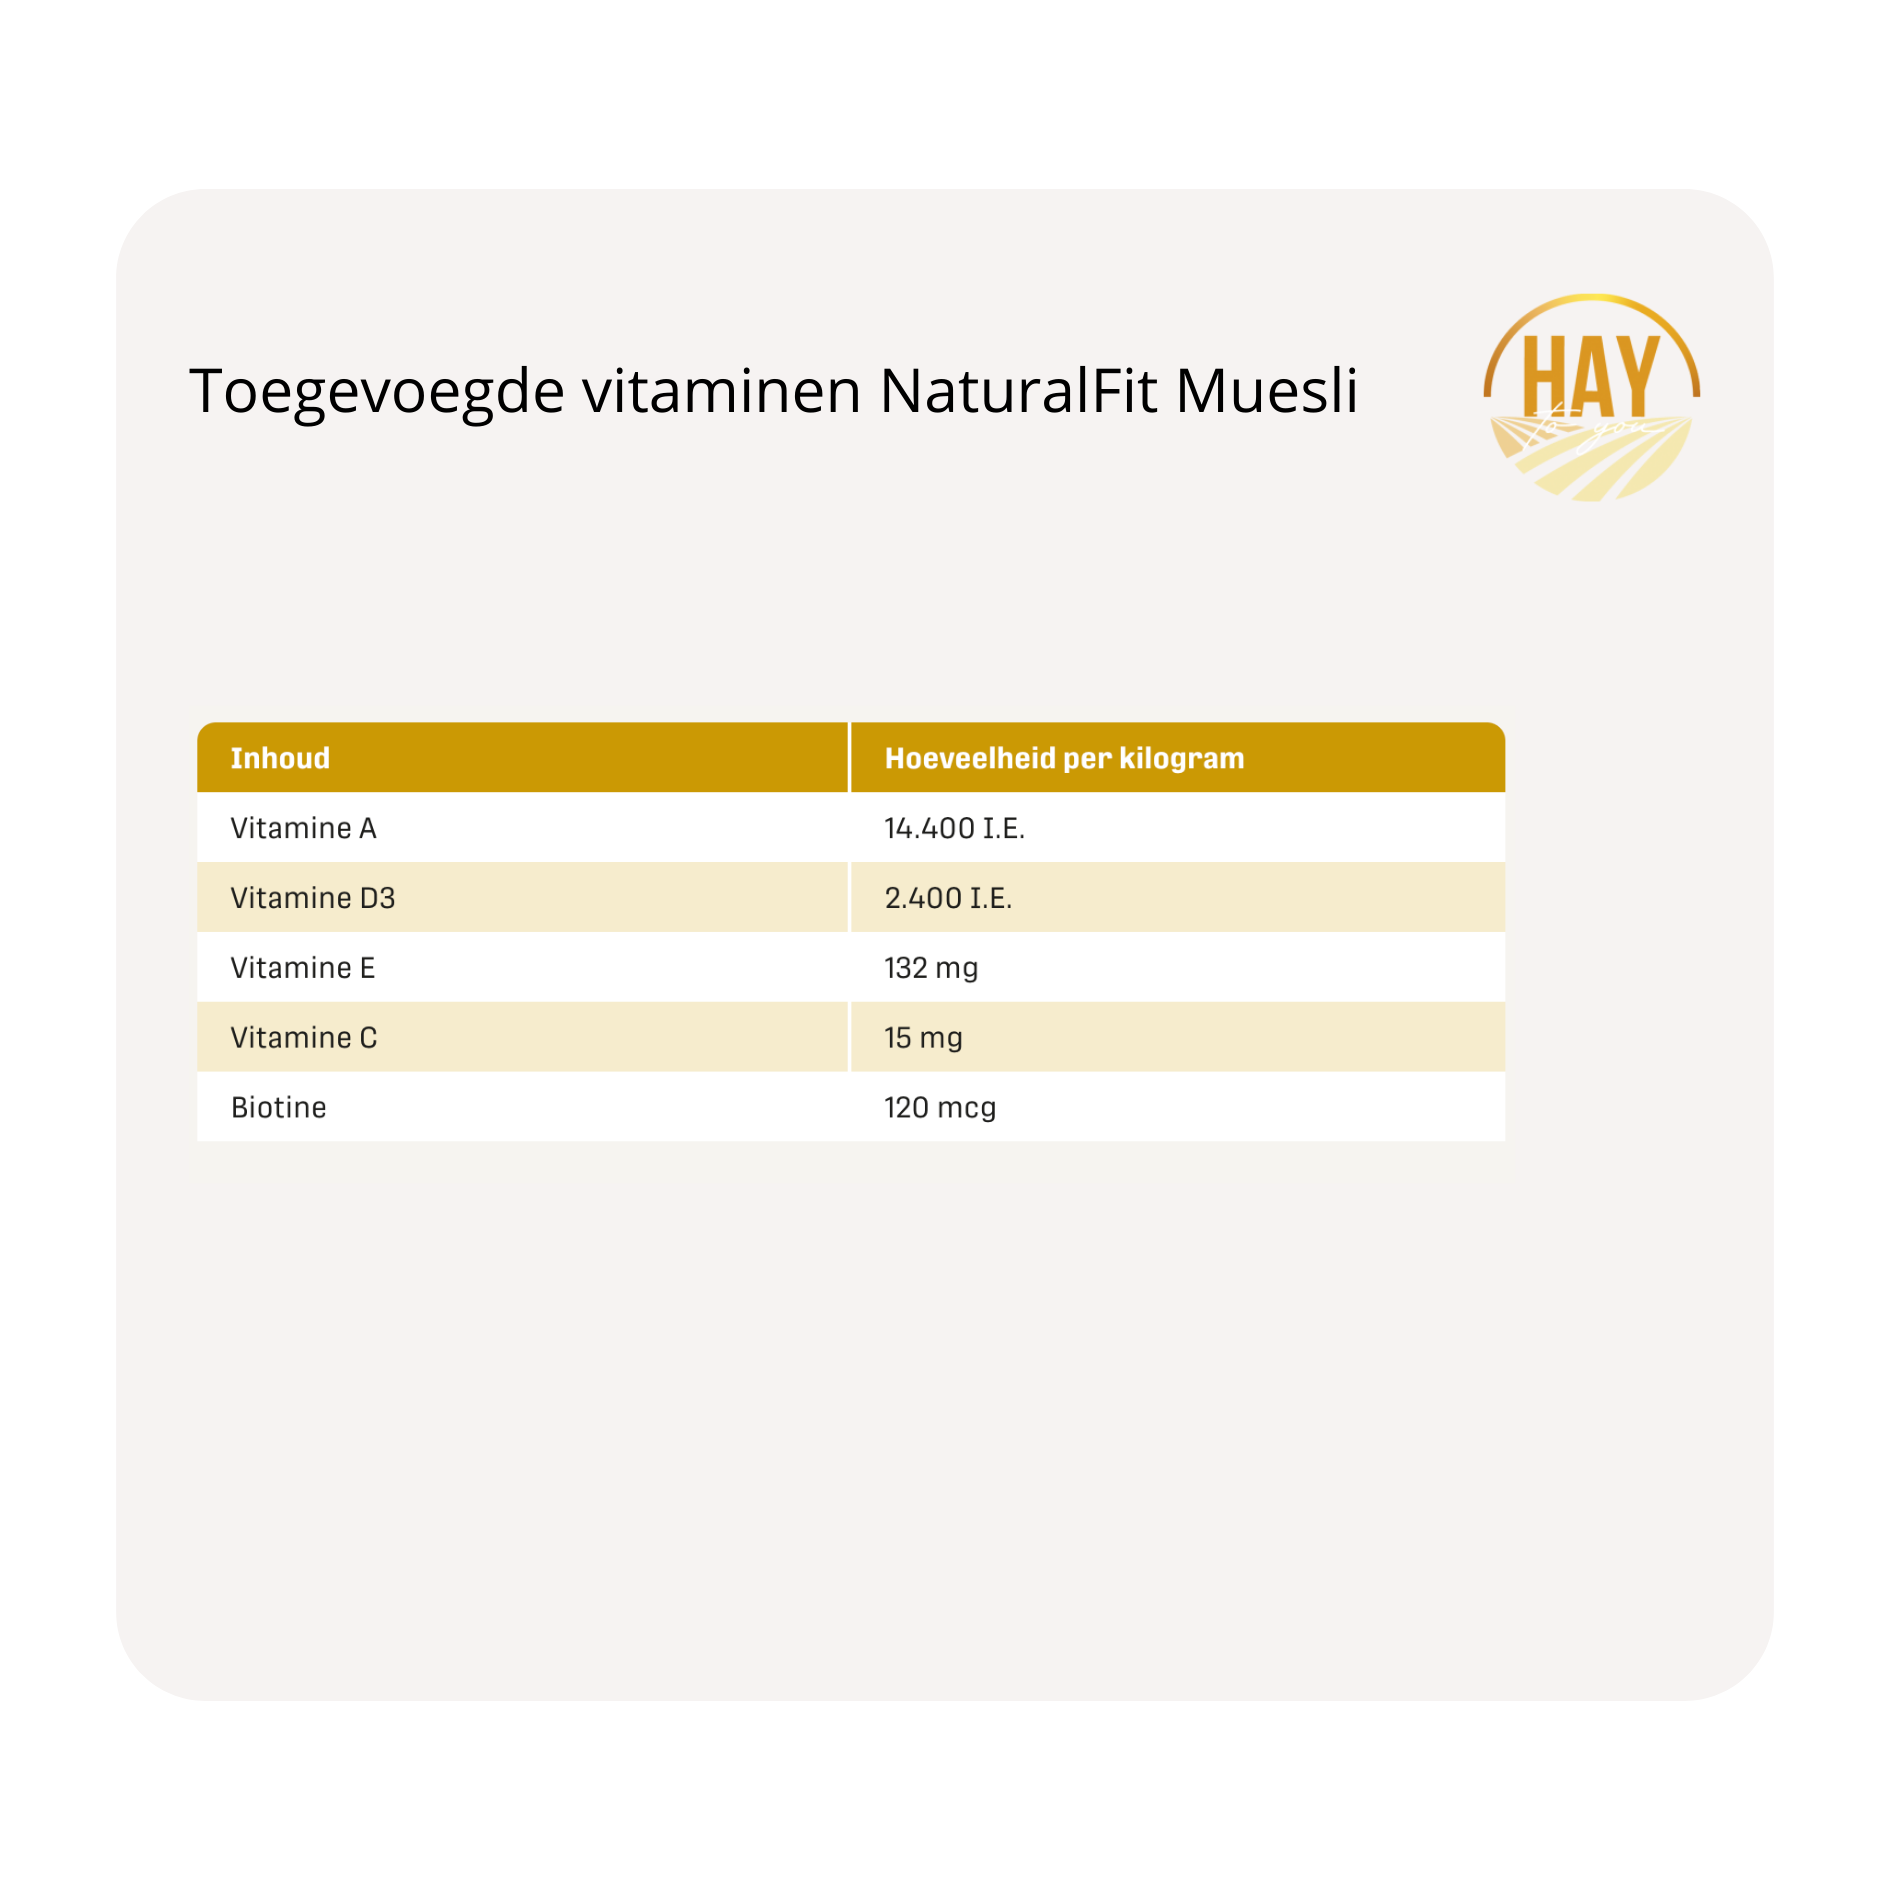 toegevoegde vitaminen Metazoa NaturalFit Muesli krachtvoer en supplementen